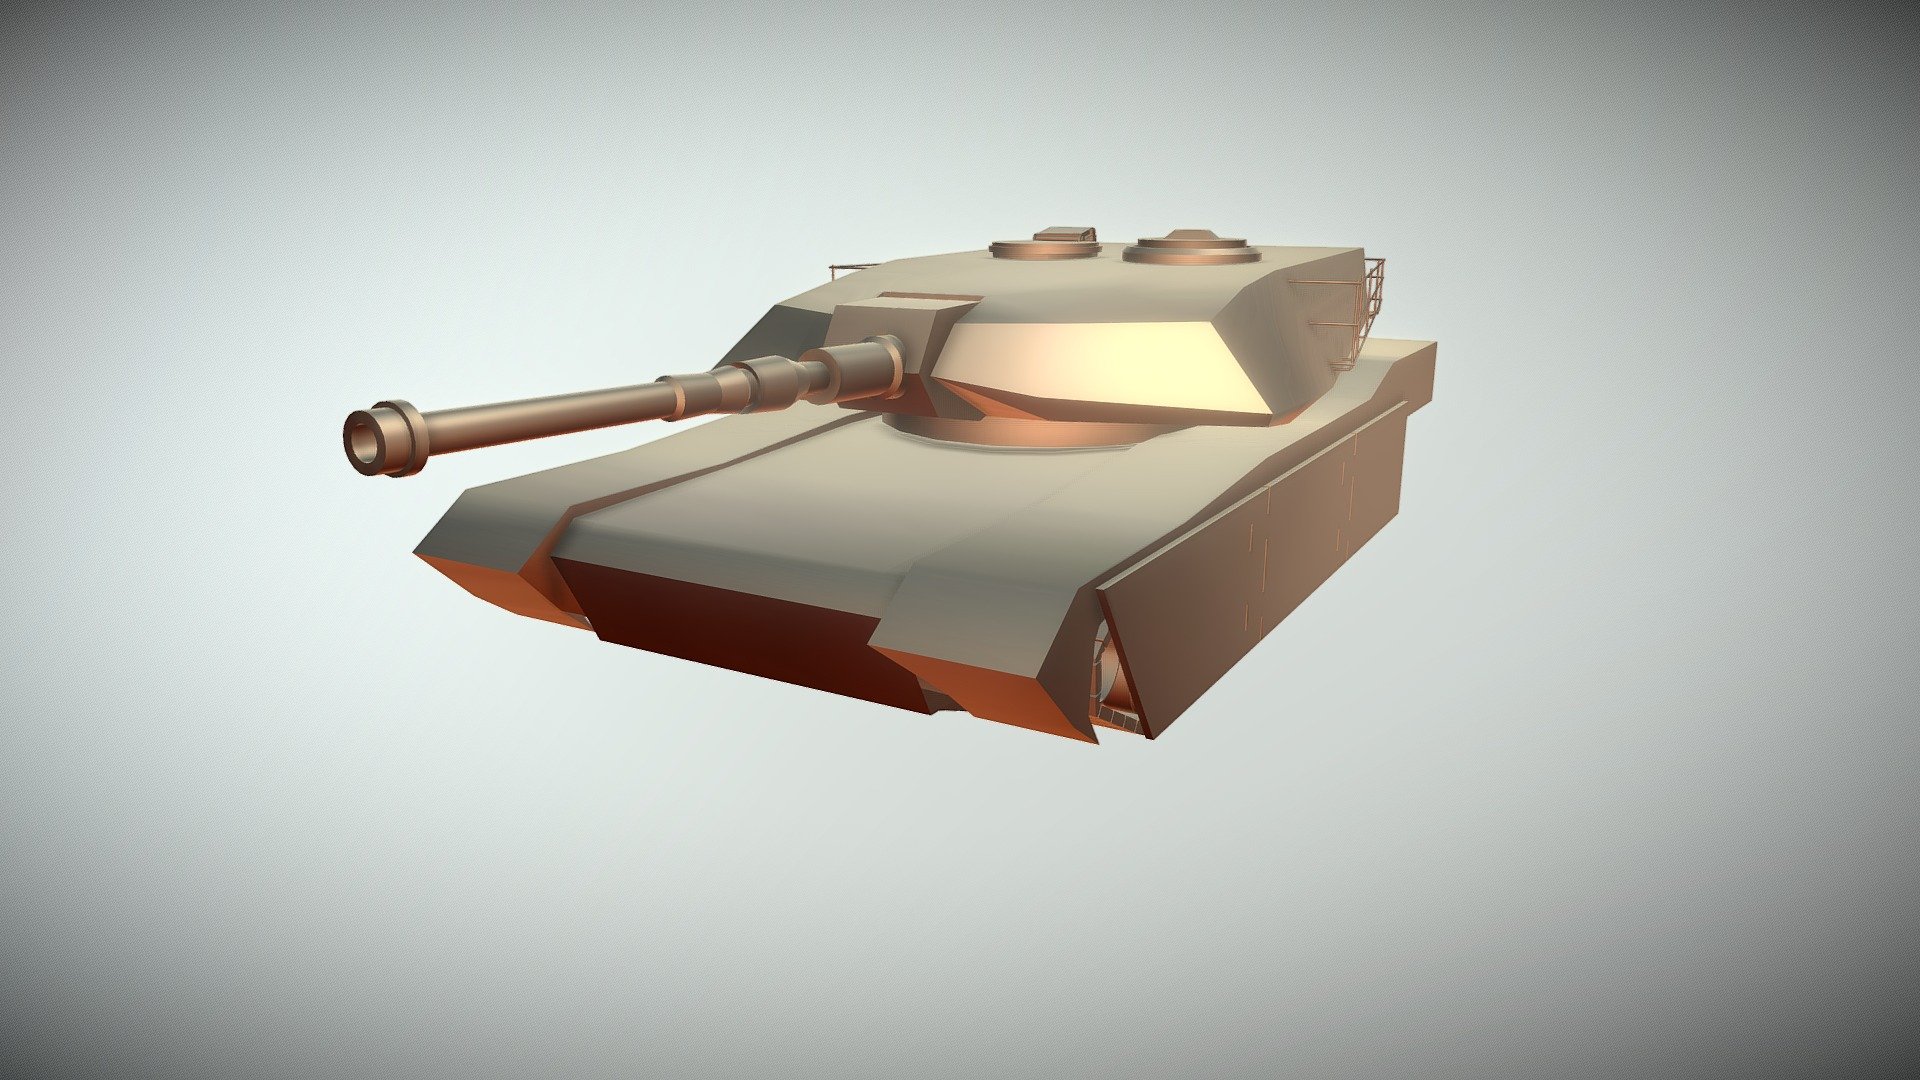 M1 Abrams Battle Tank